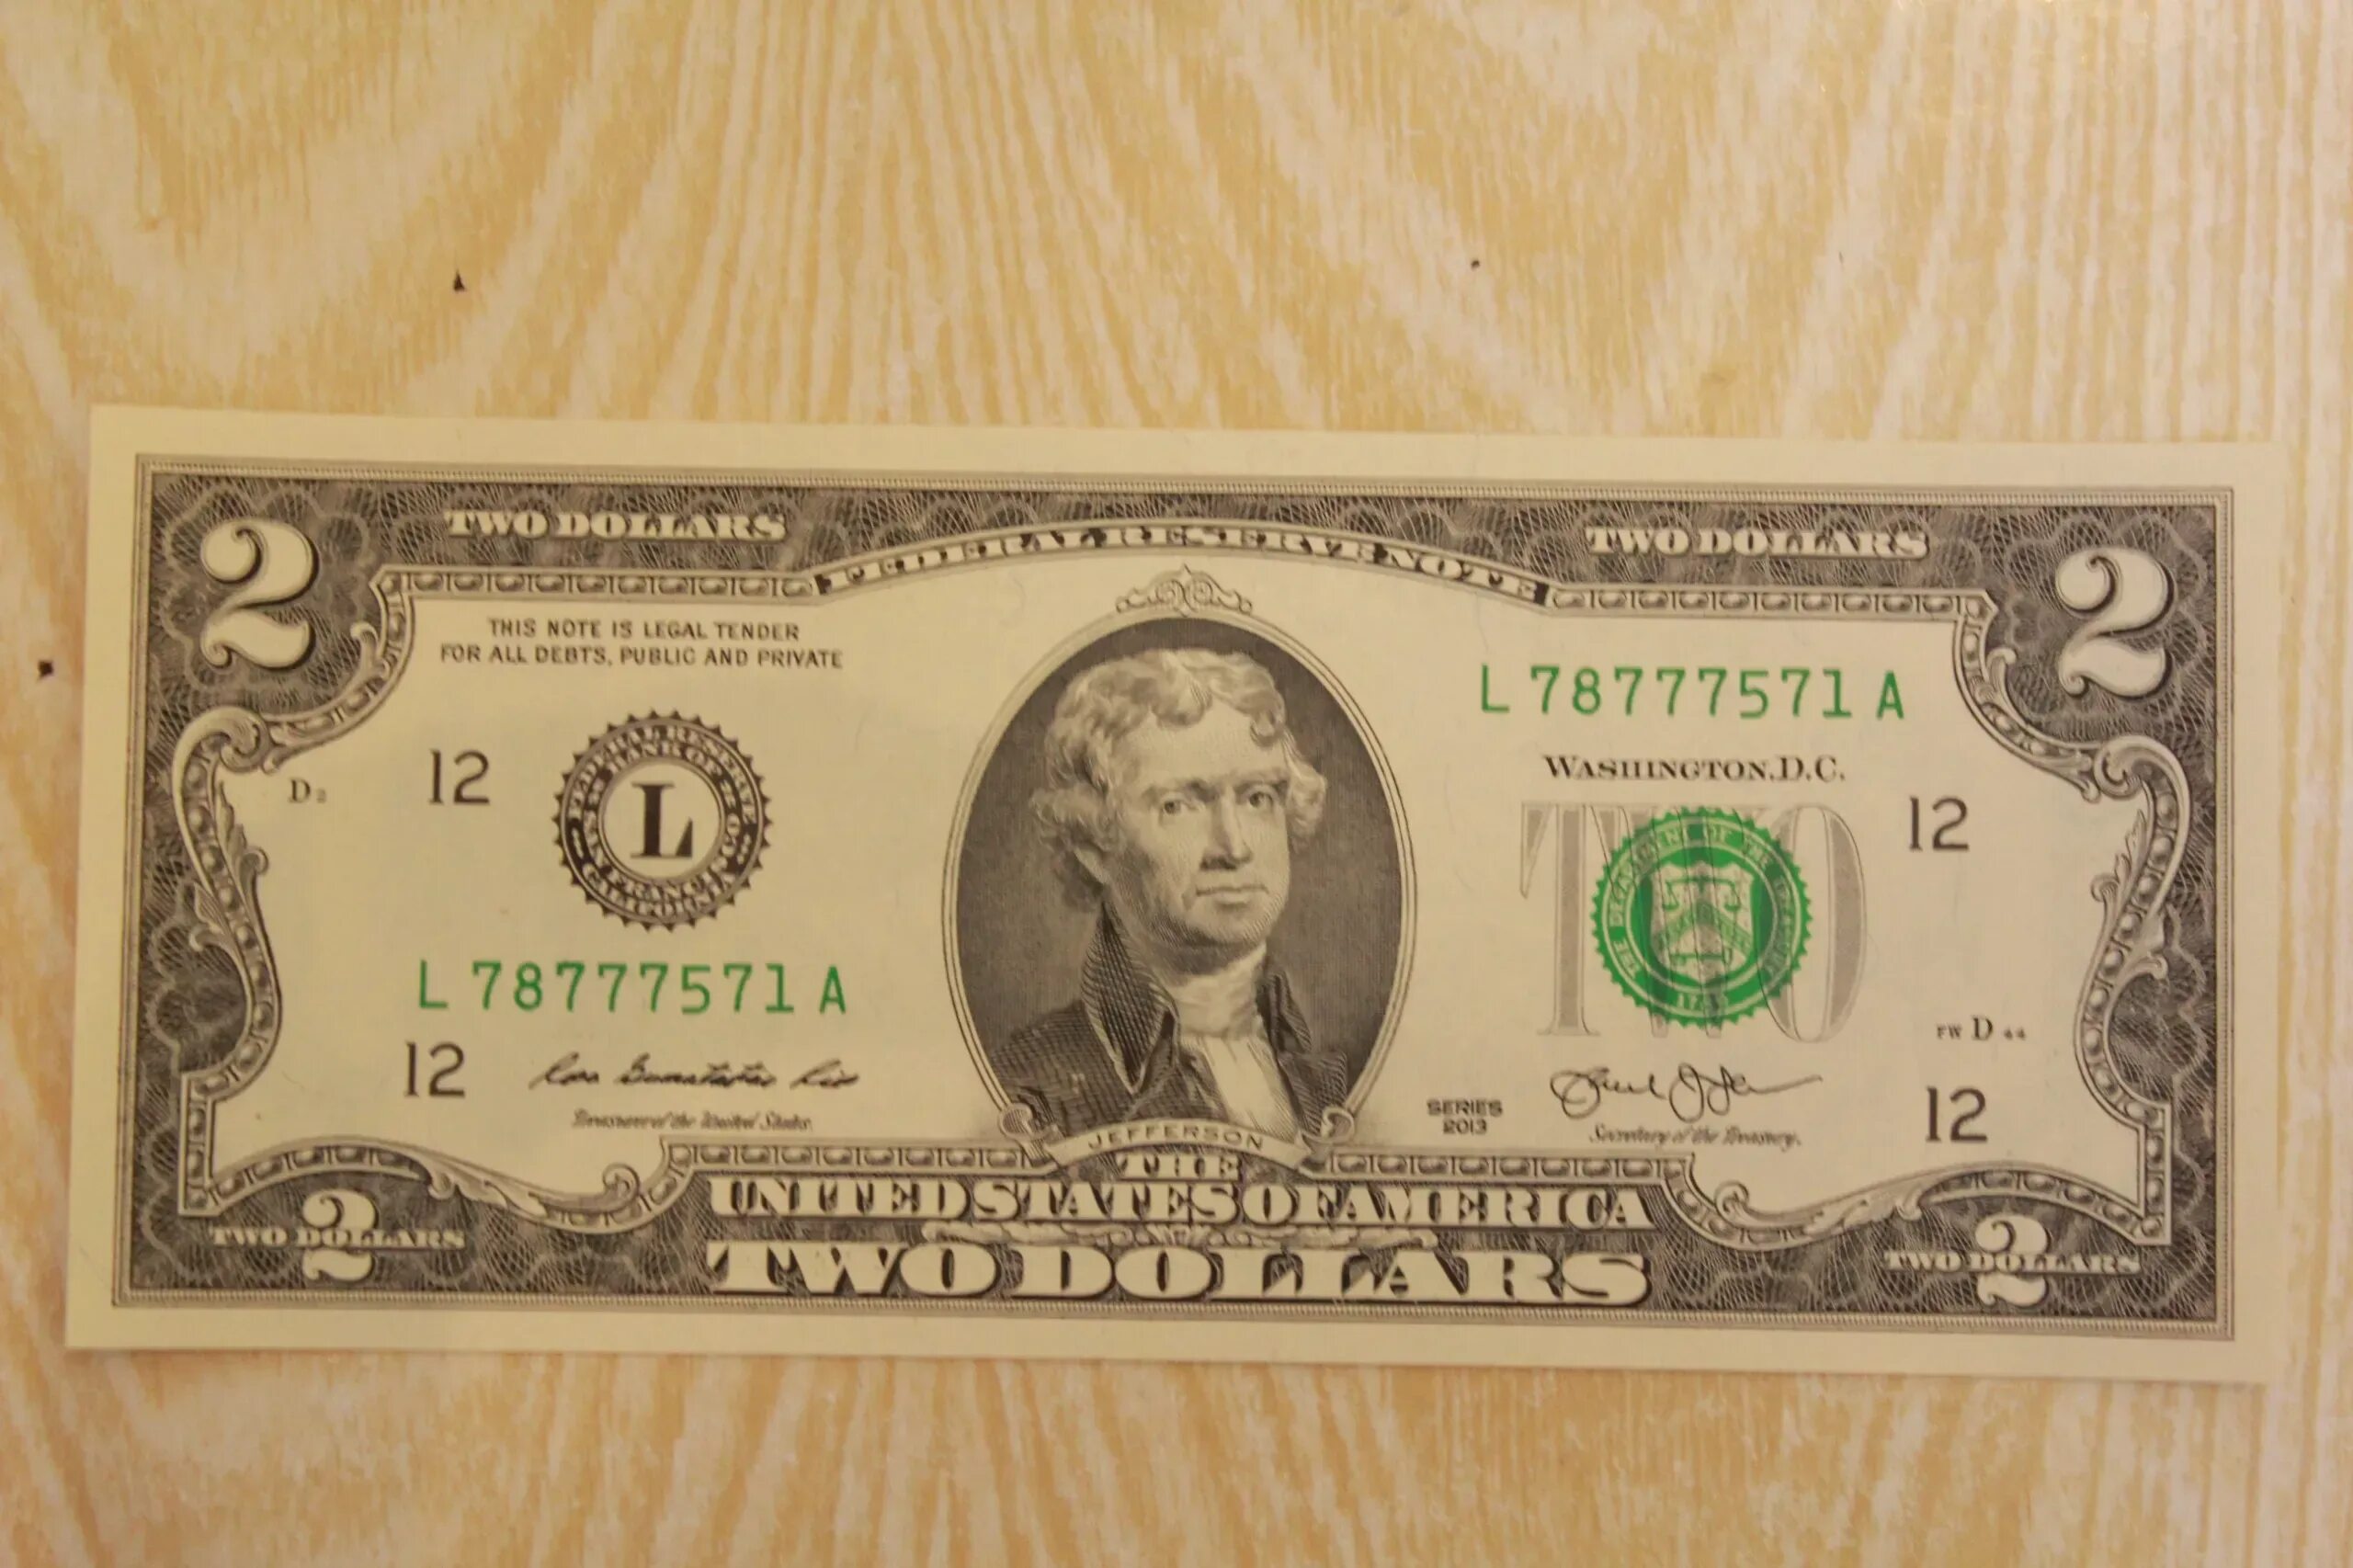 2013 долларов в рублях. Доллар в 2013 году. Доллар 2003 года. Доллар 2013 года фото. Два доллара СТО рублей.